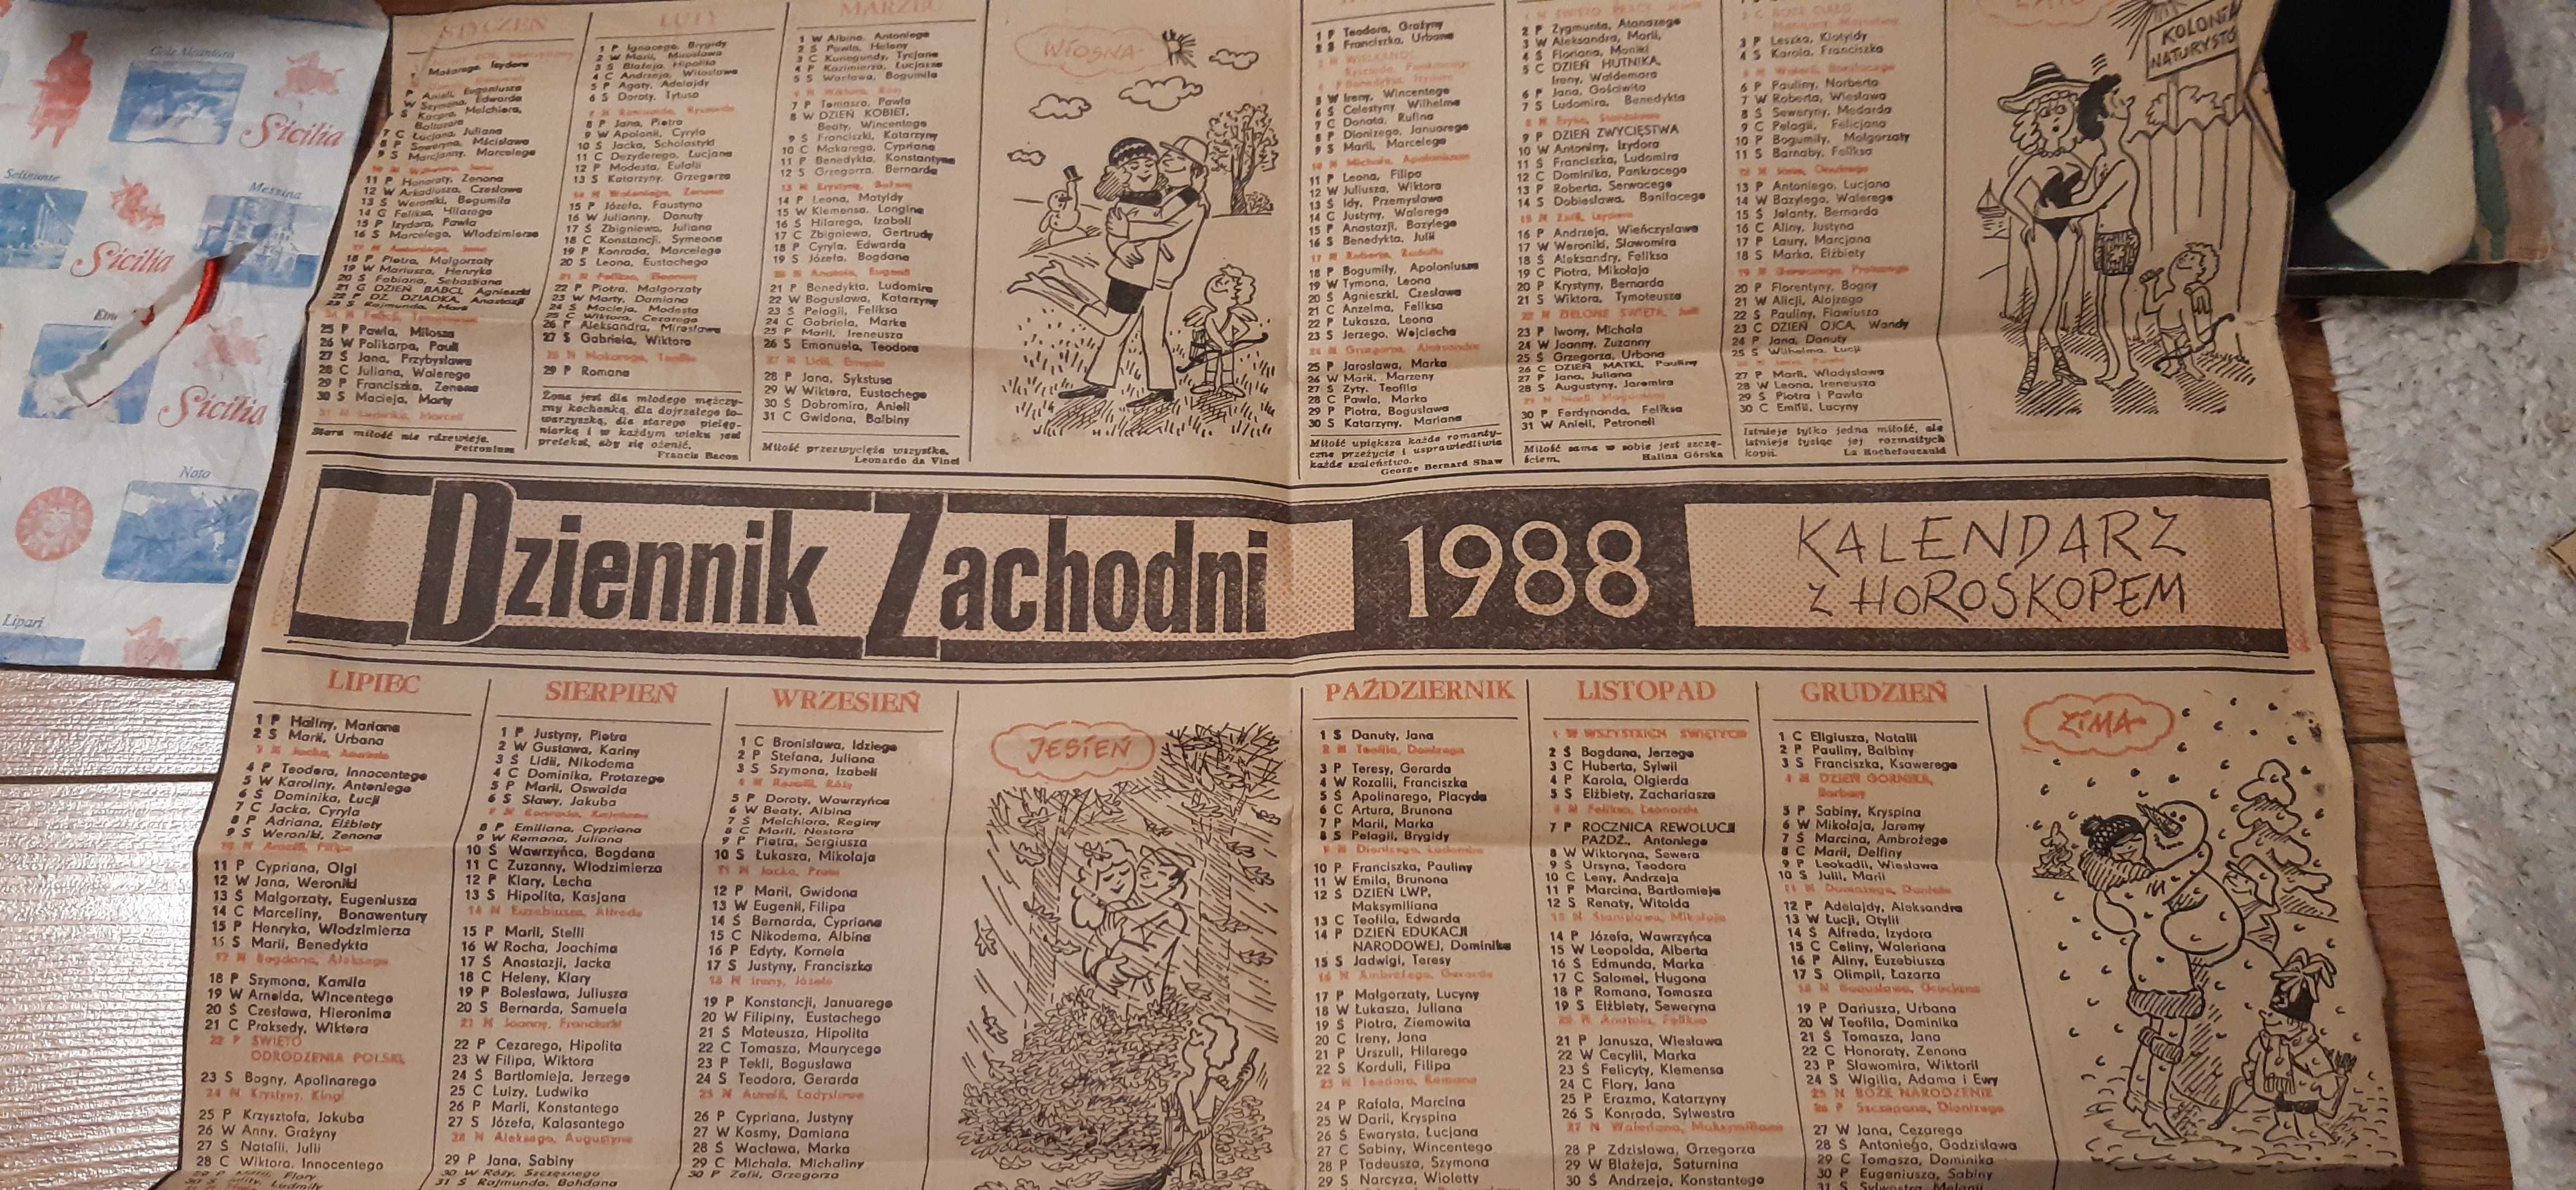 stary kalendarz z 1988roku z horoskopem z dziennika zachodniego